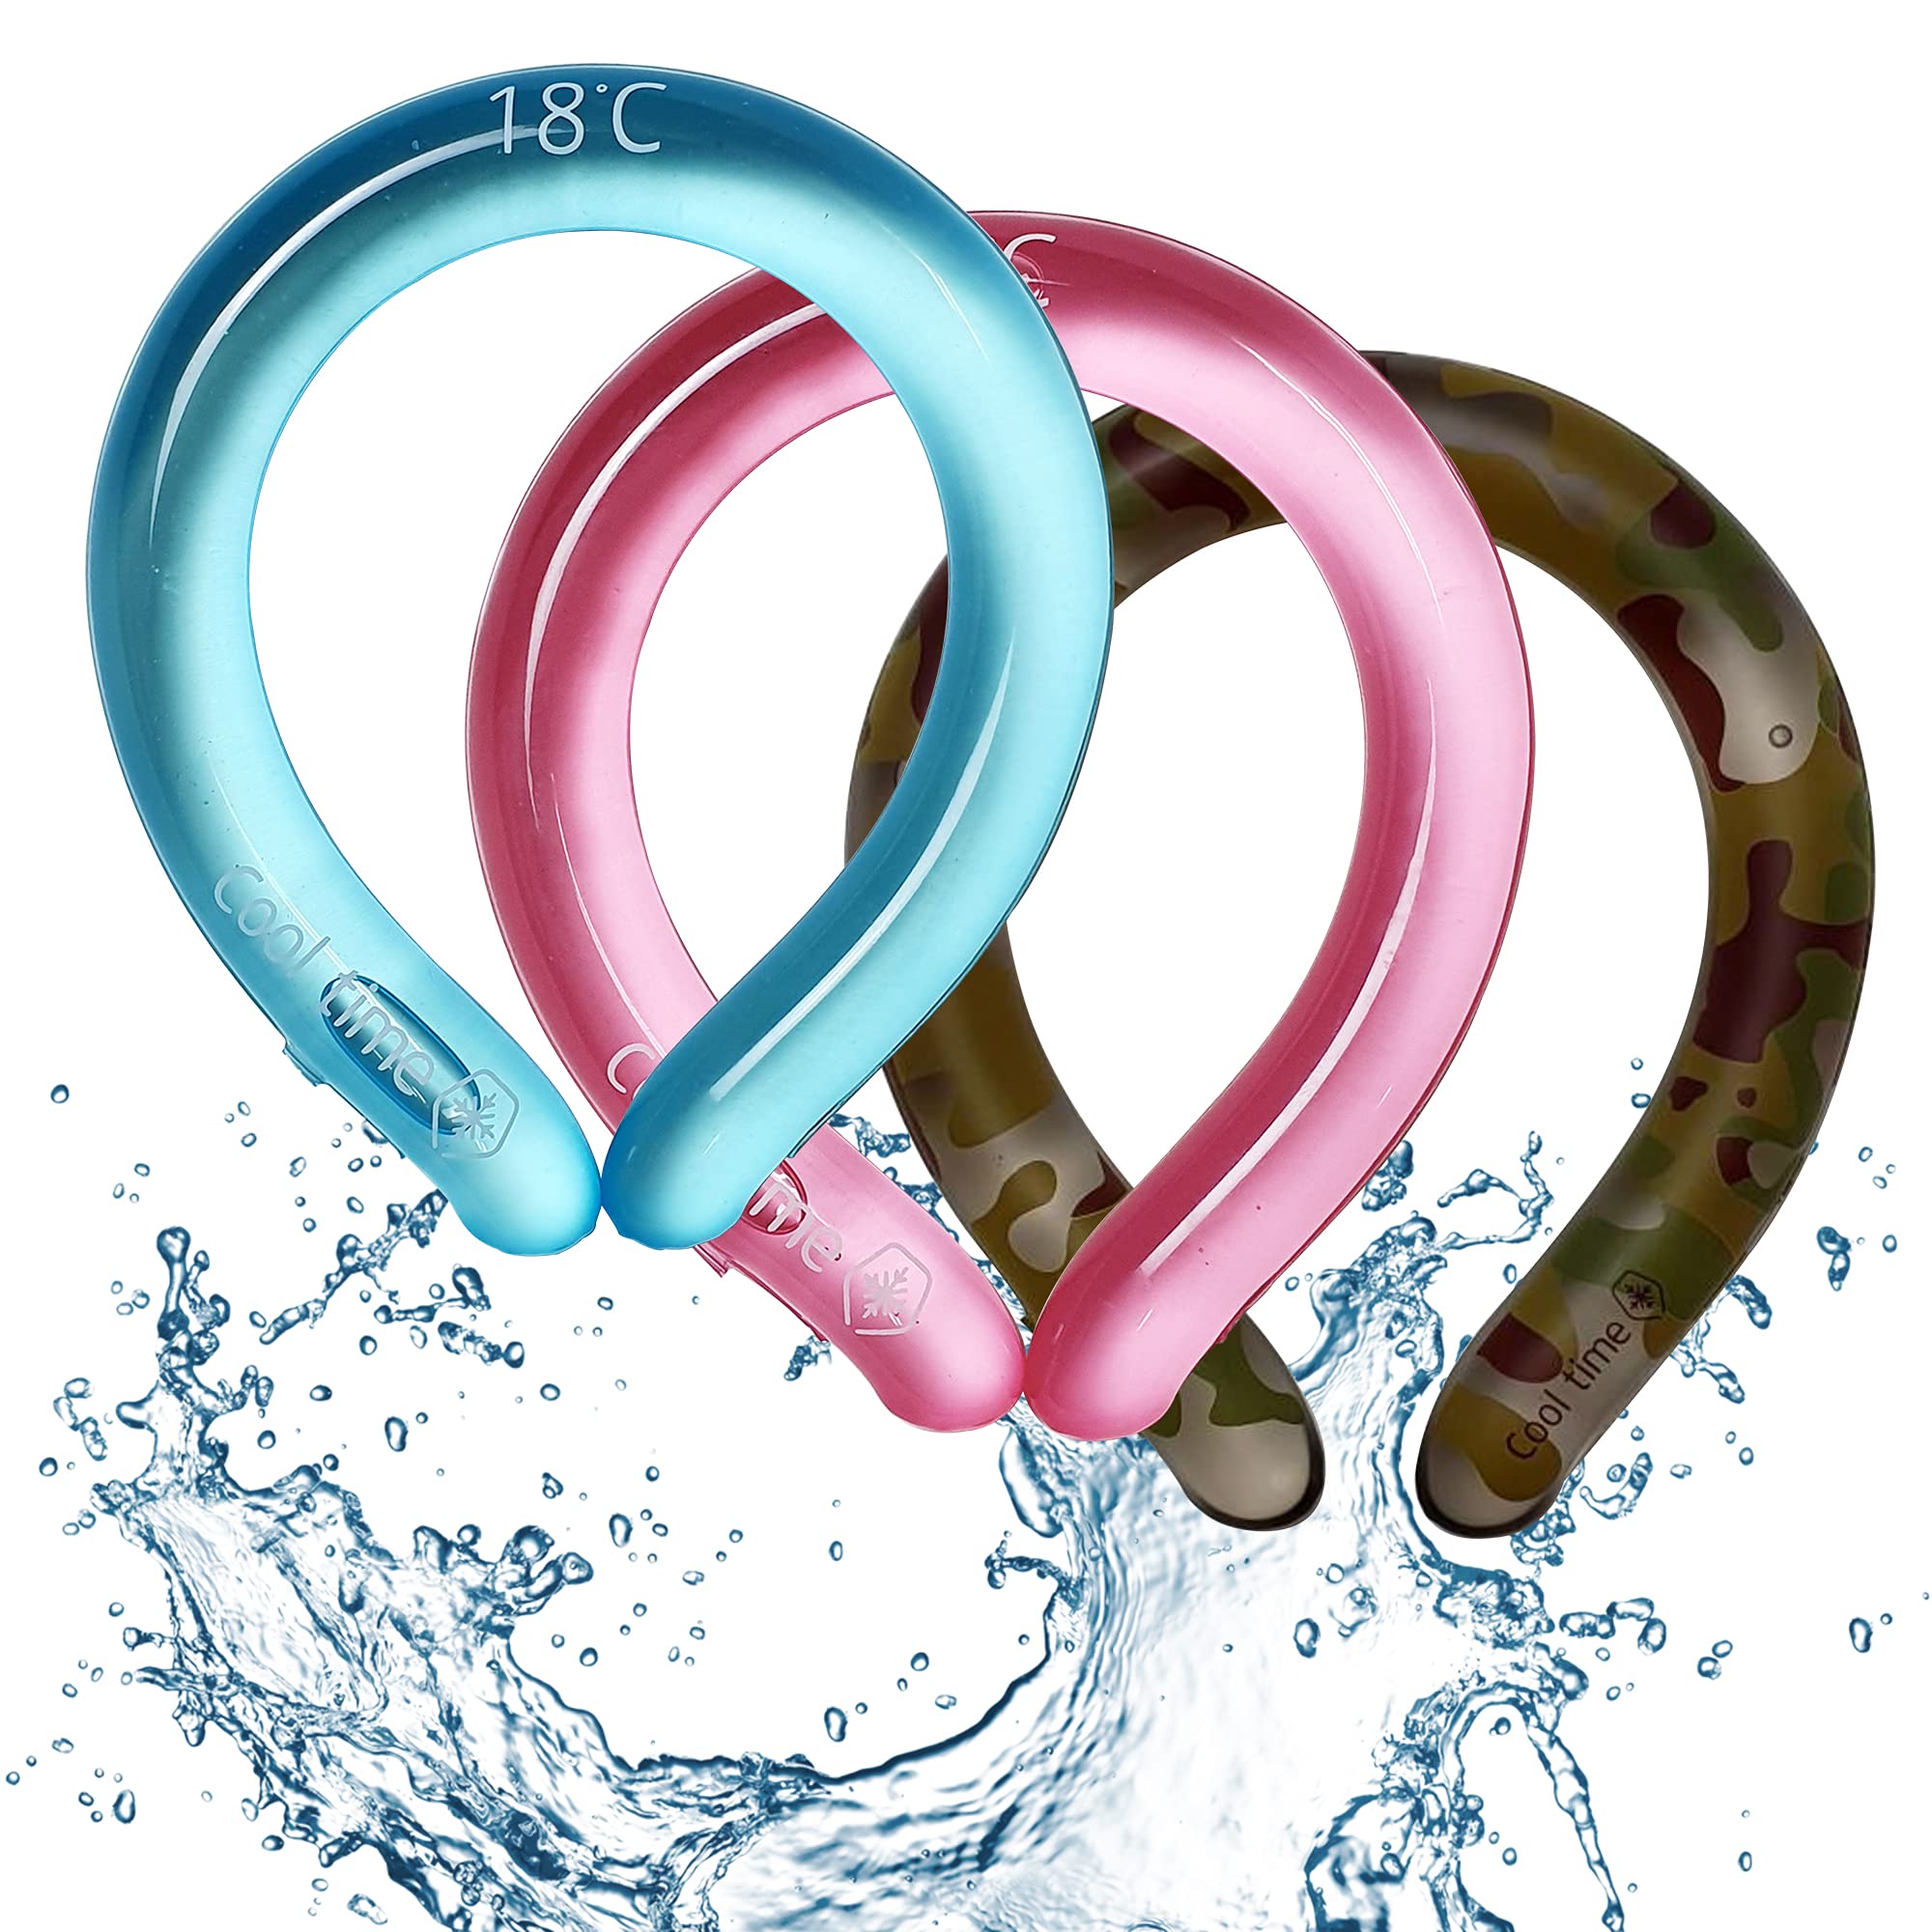 Vòng đeo cổ giải nhiệt mùa hè Neck cooling Tube | Wearable Cooling Neck Wraps for Summer Heat (Màu ngẫu nhiên